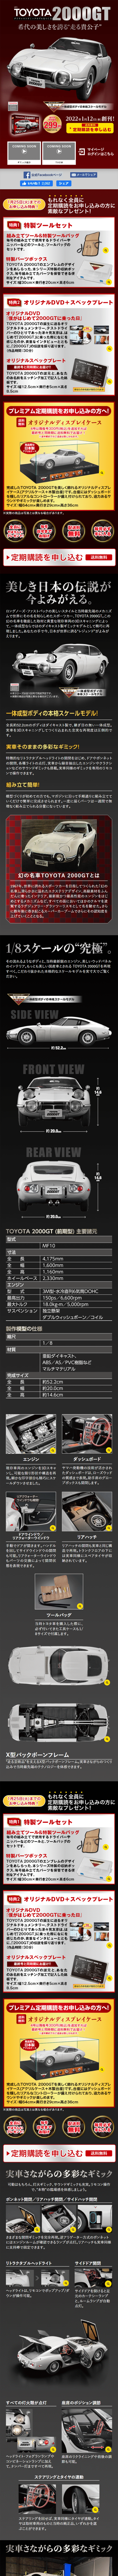 週刊トヨタ2000GT ダイキャストギミックモデルをつくる_sp_1